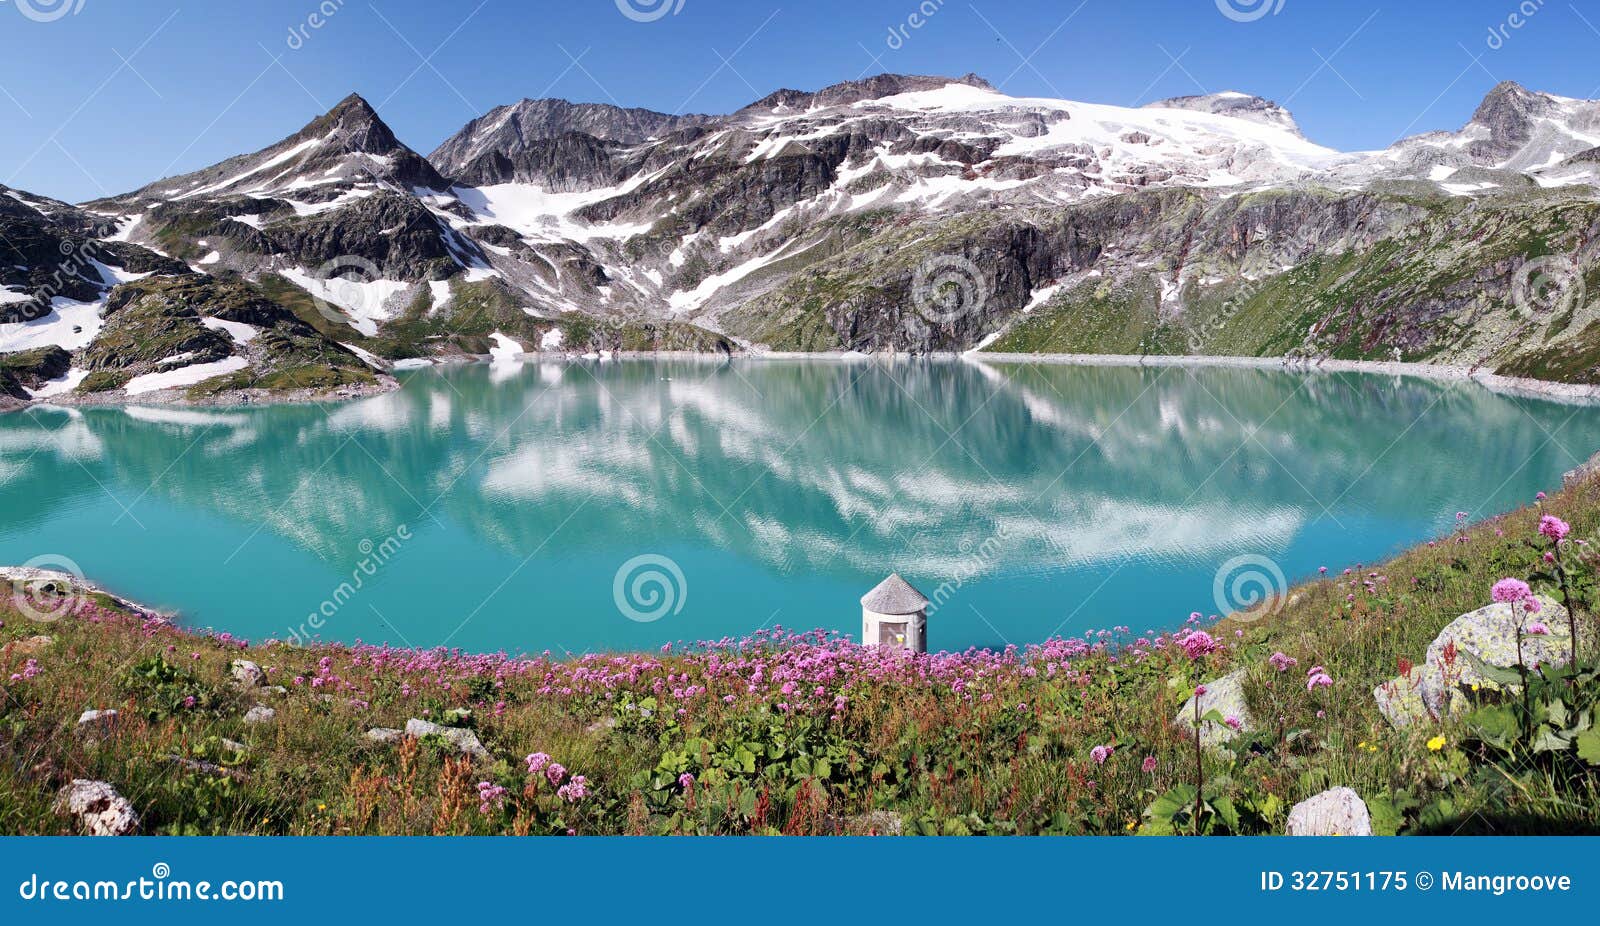 mountain lake in apls, austria